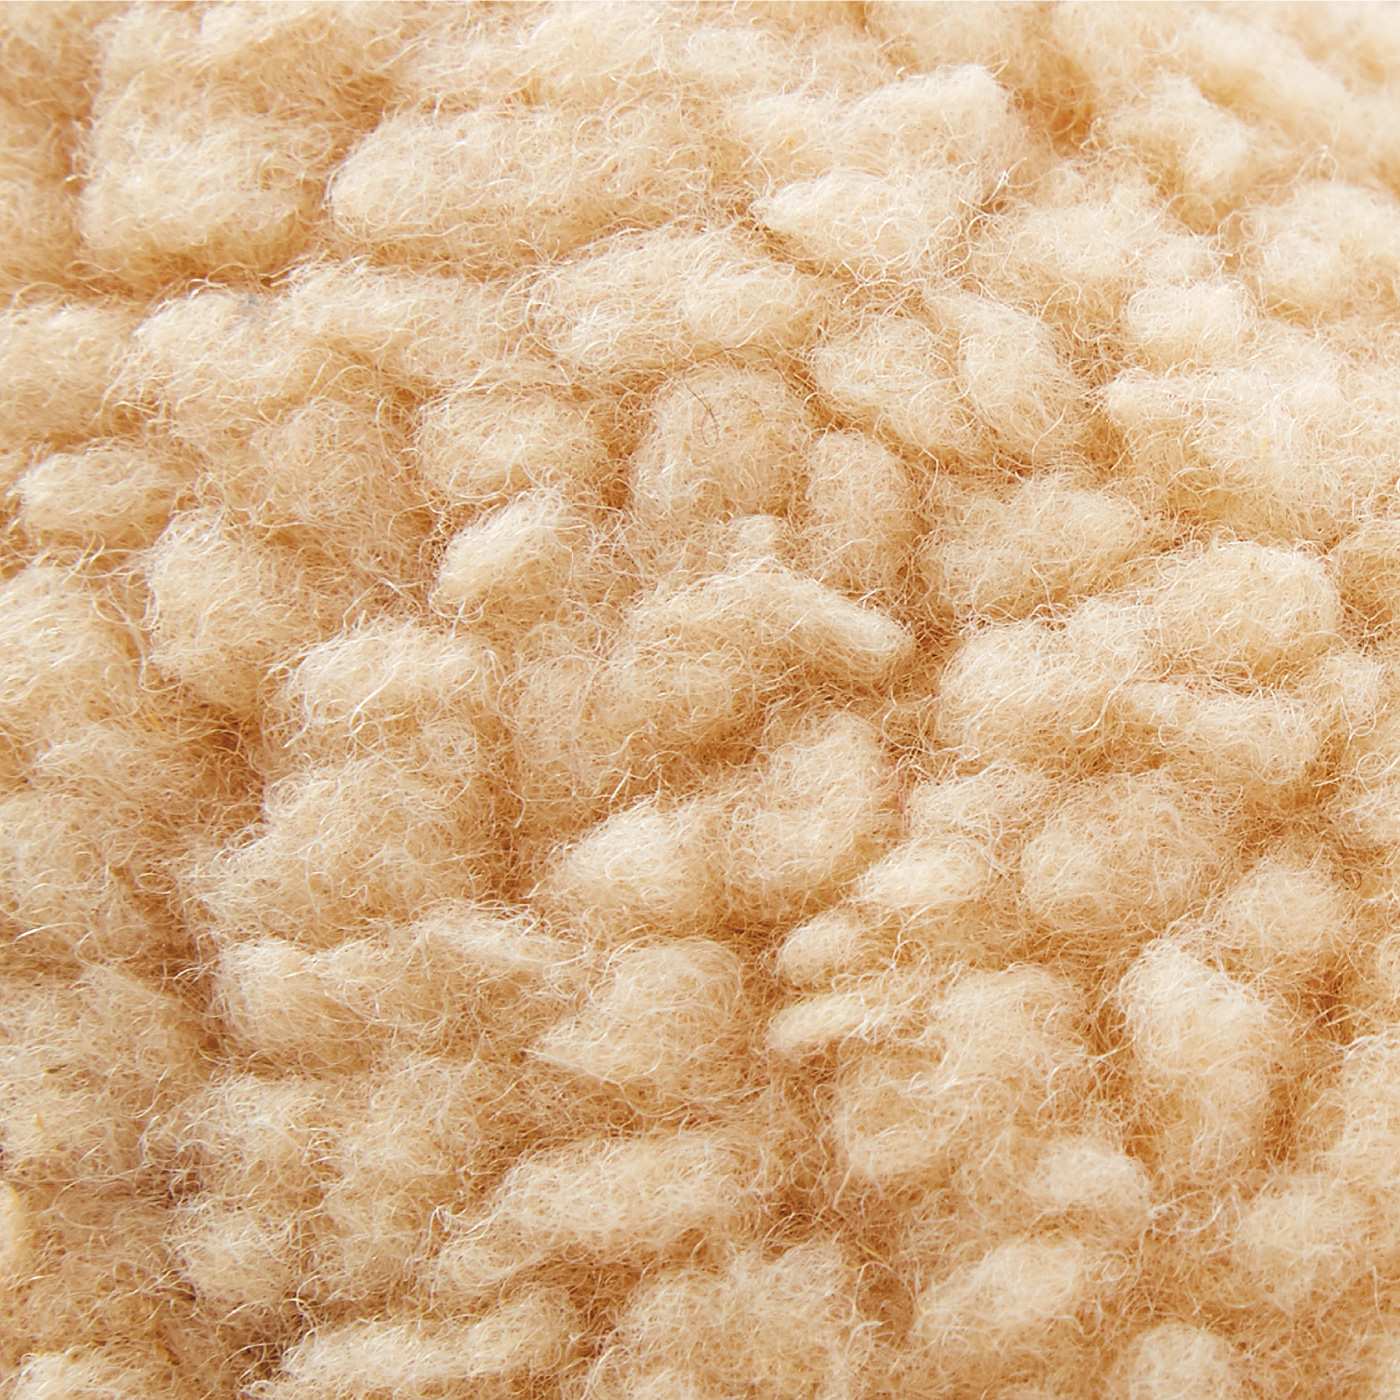 Wool Shearing Plush Toy